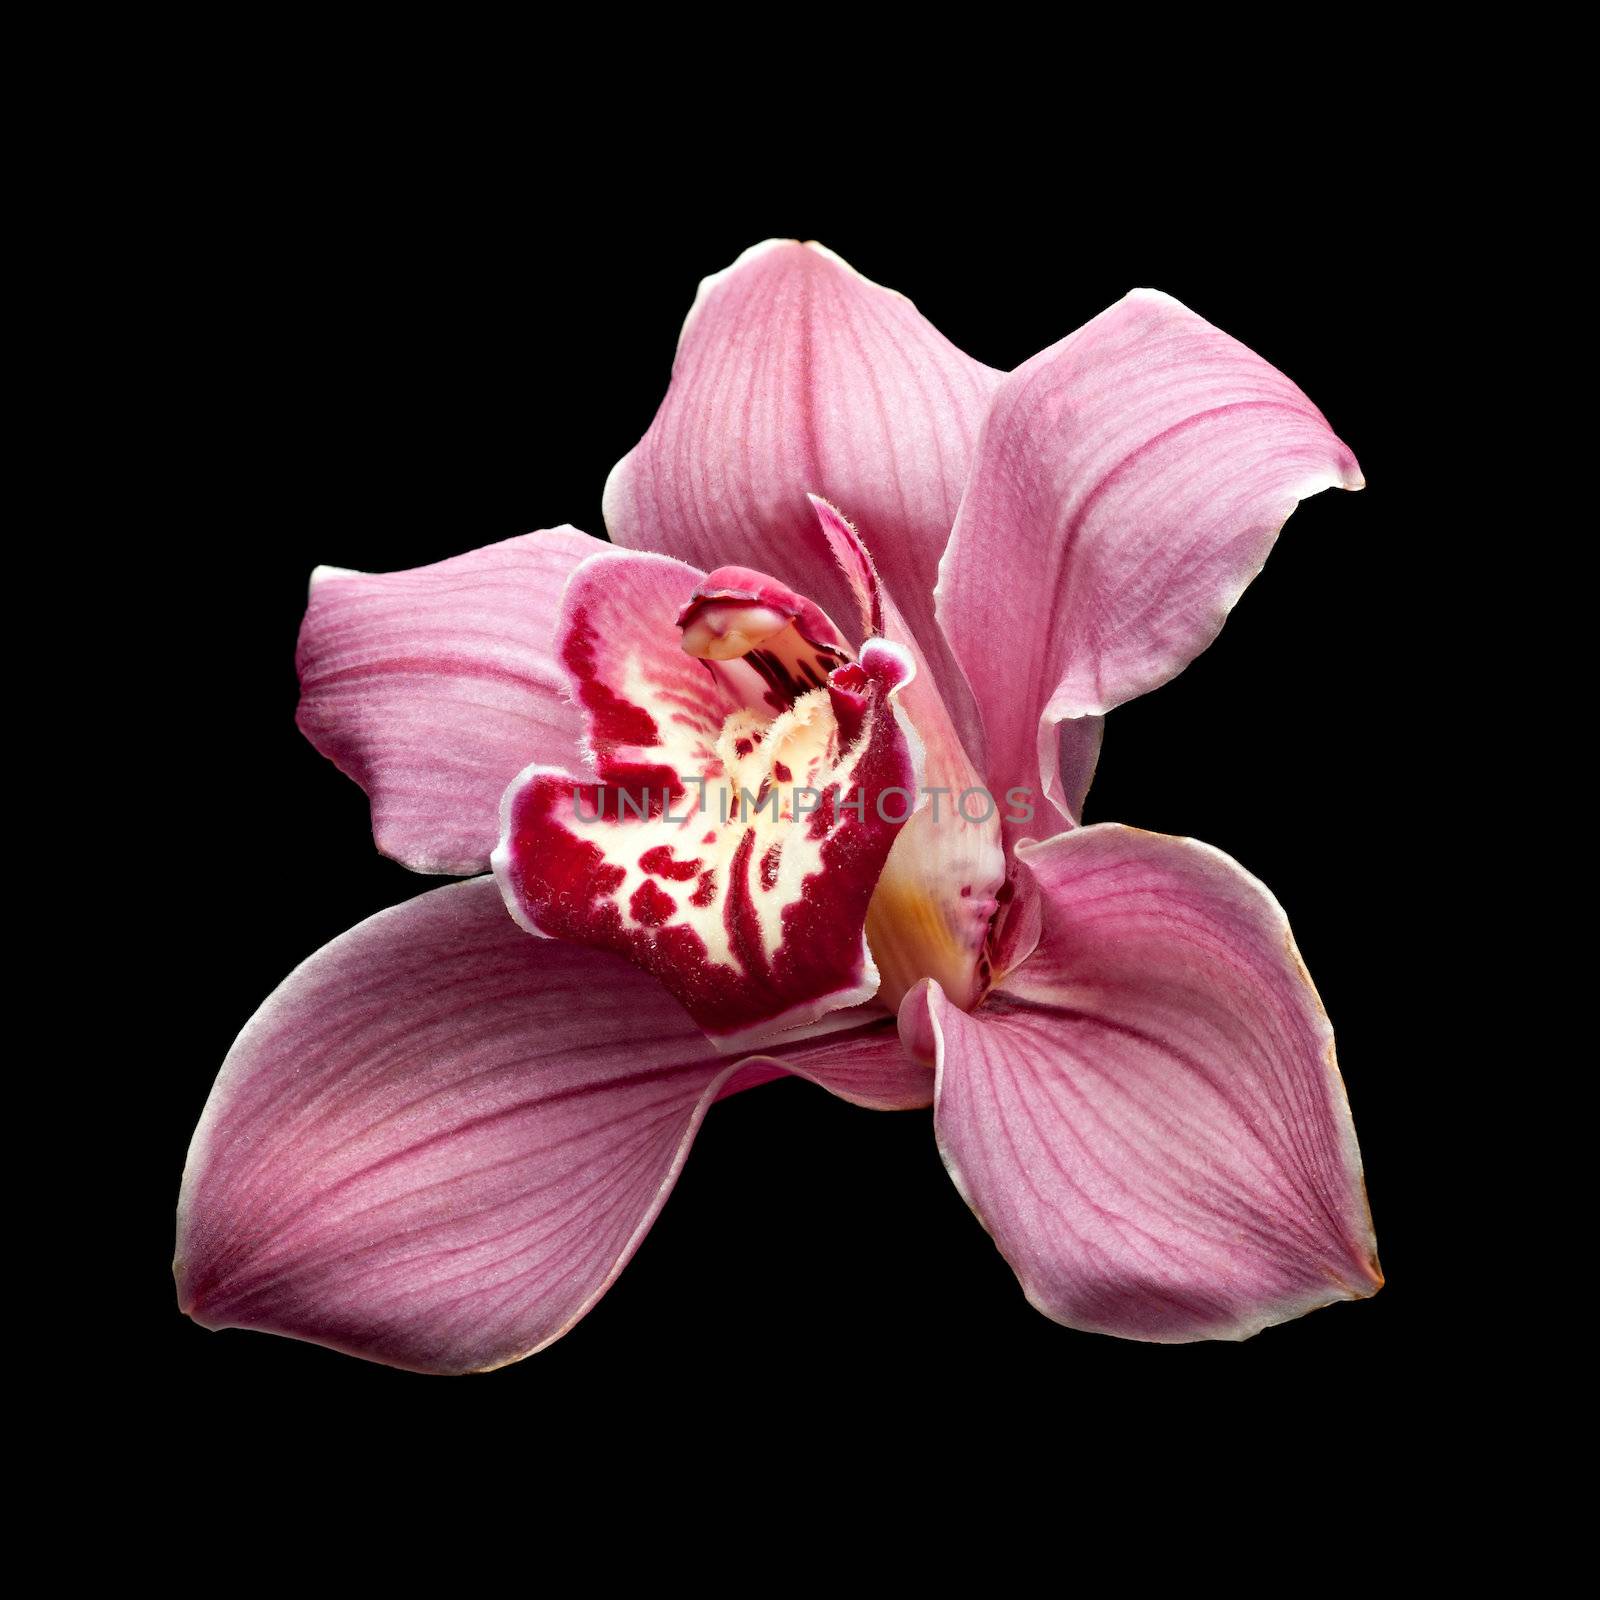 Purple Orchid Flower by palinchak